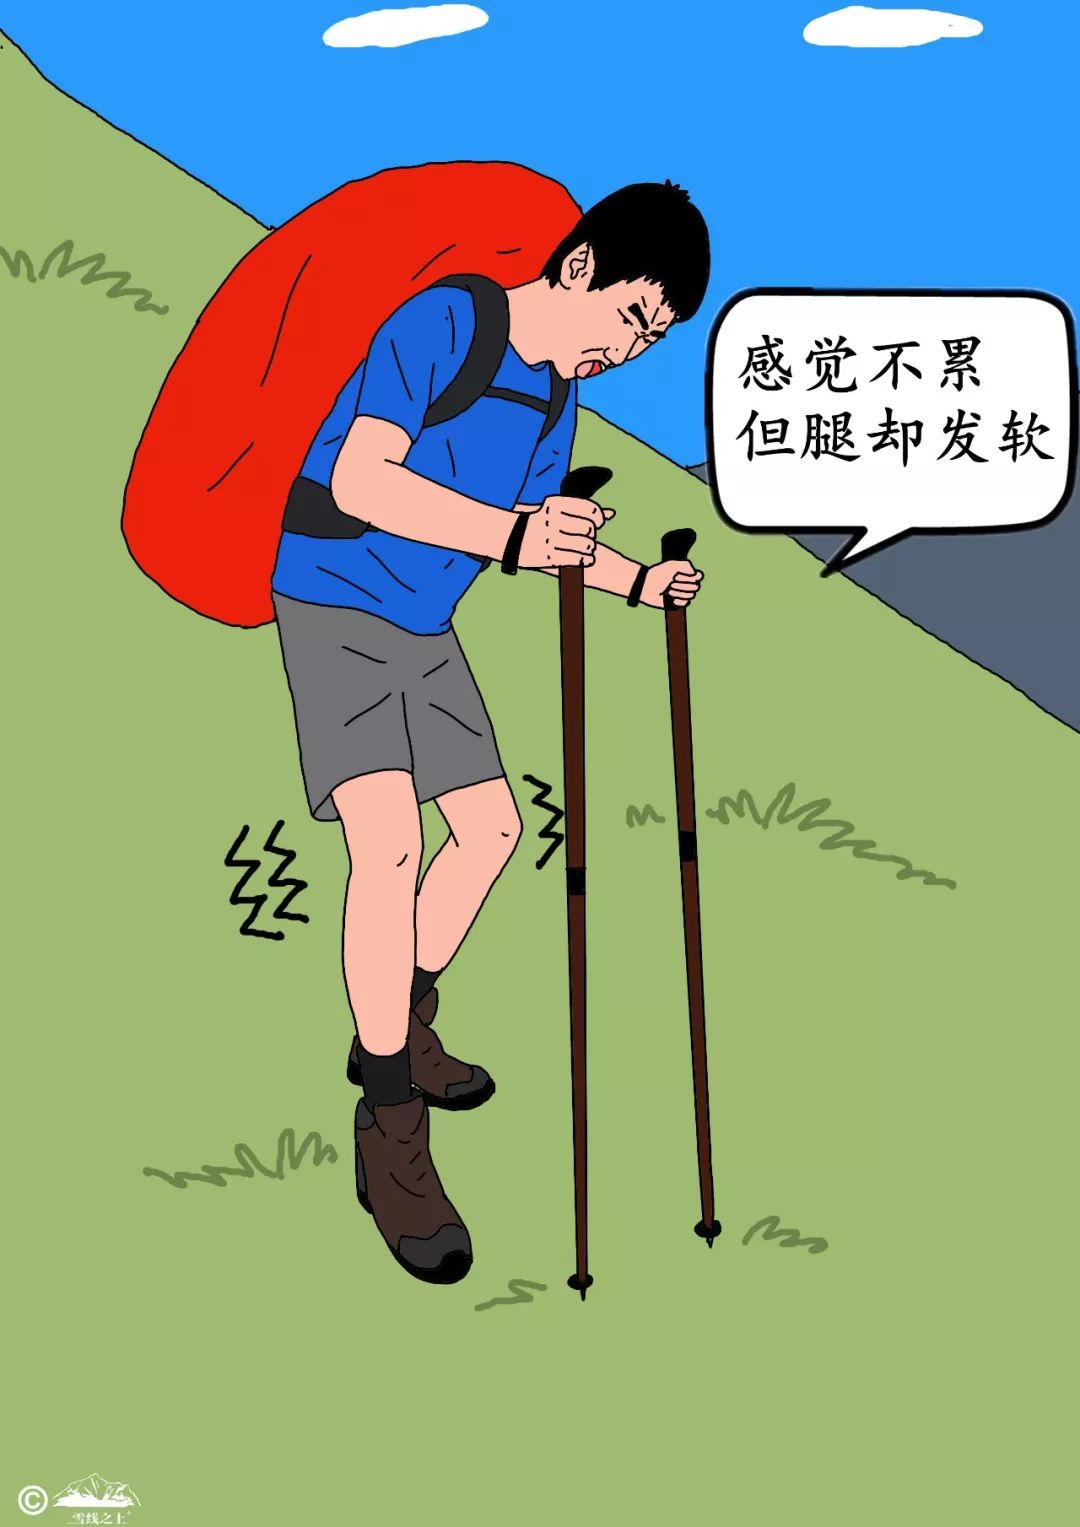 课堂|登山徒步时,"腿软"怎么办?